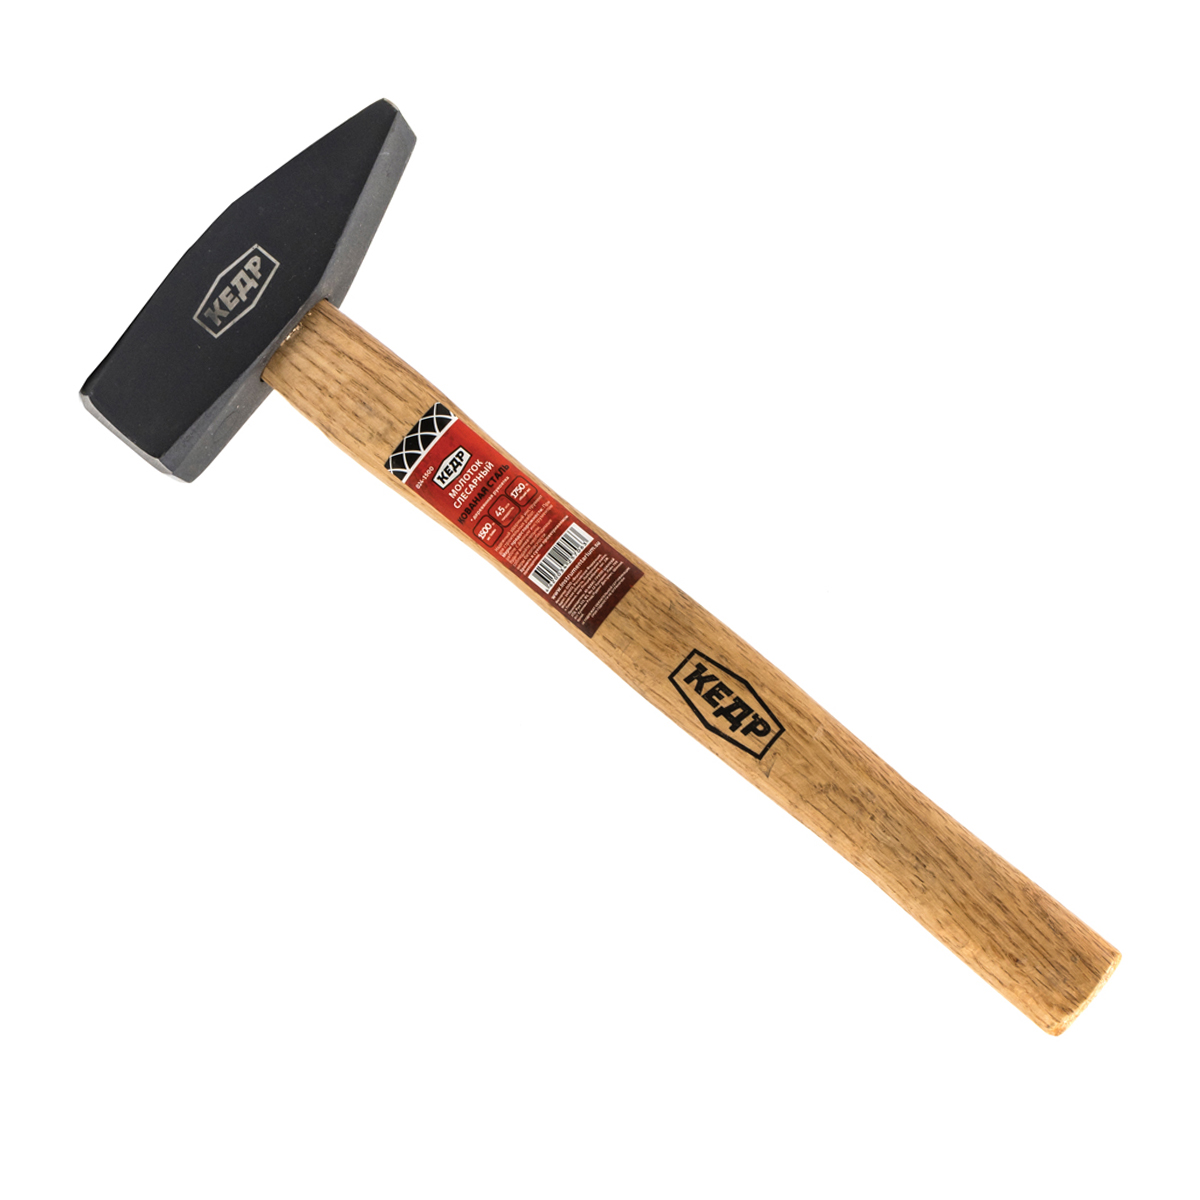 Молоток слесарный Кедр, деревянная ручка, 800 г молоток каменщика кедр деревянная ручка 600 г